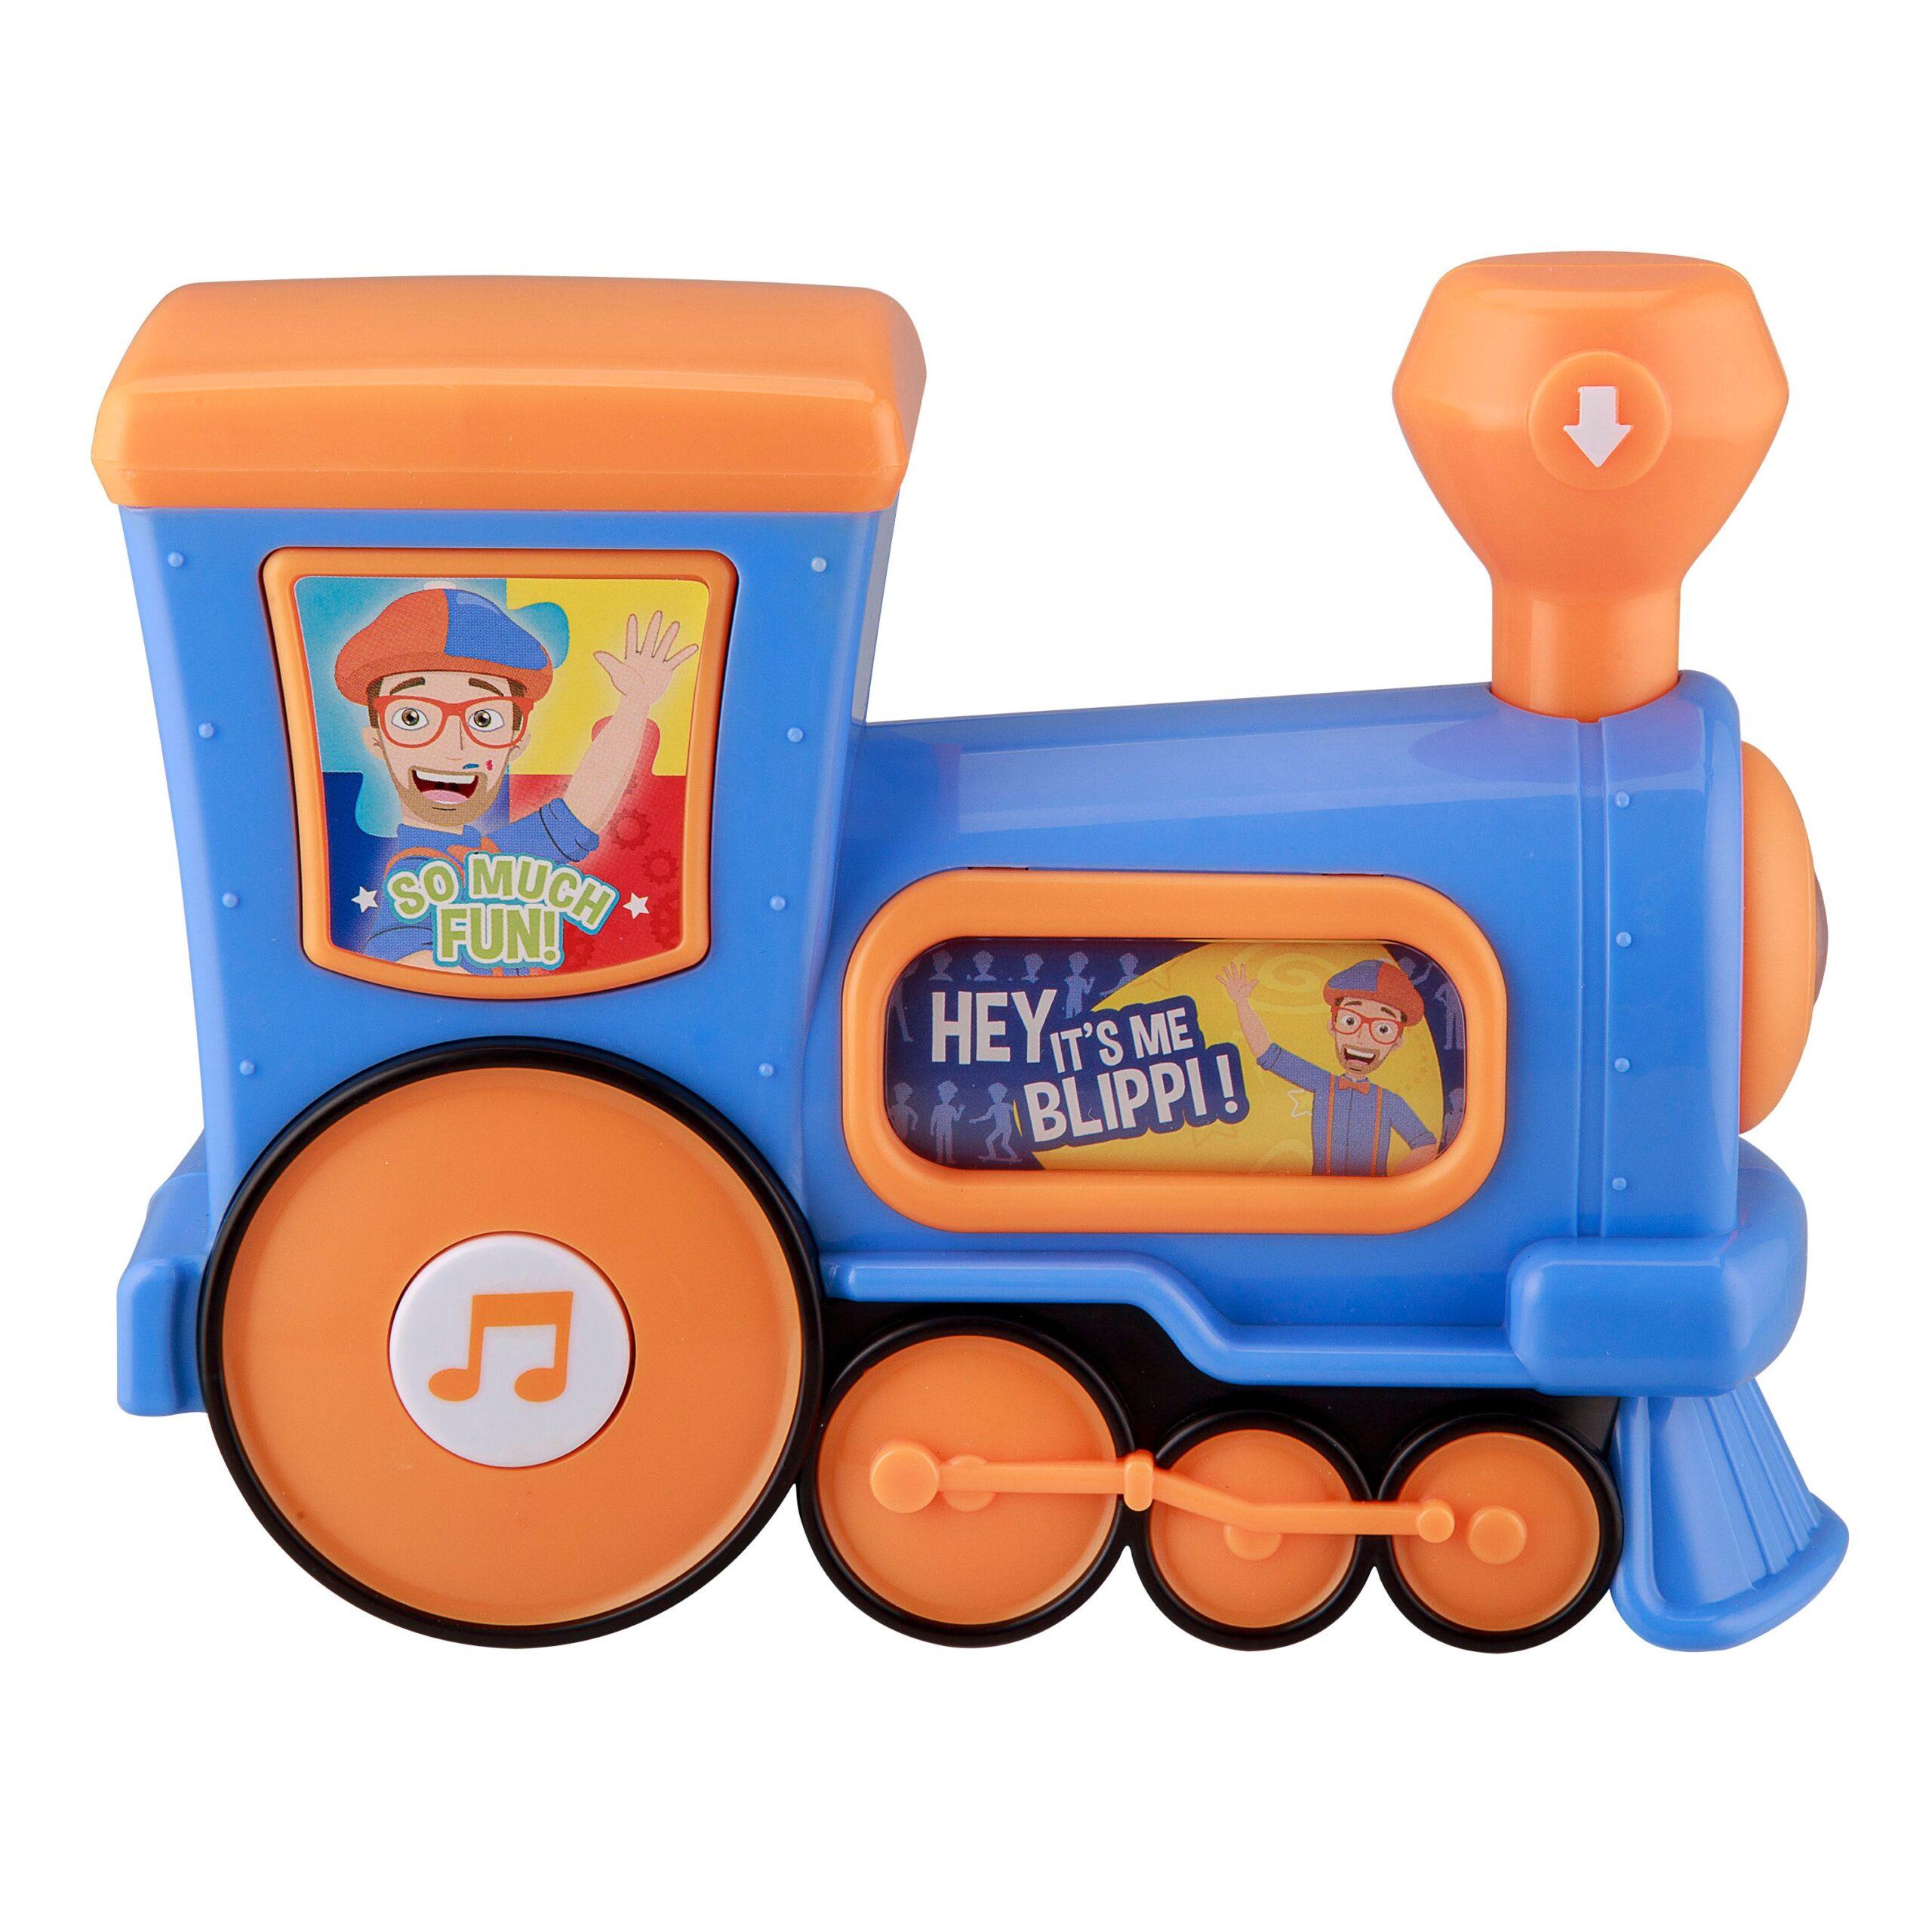 KIDdesigns Blippi Train Musical Toy for Kids - Multi-color